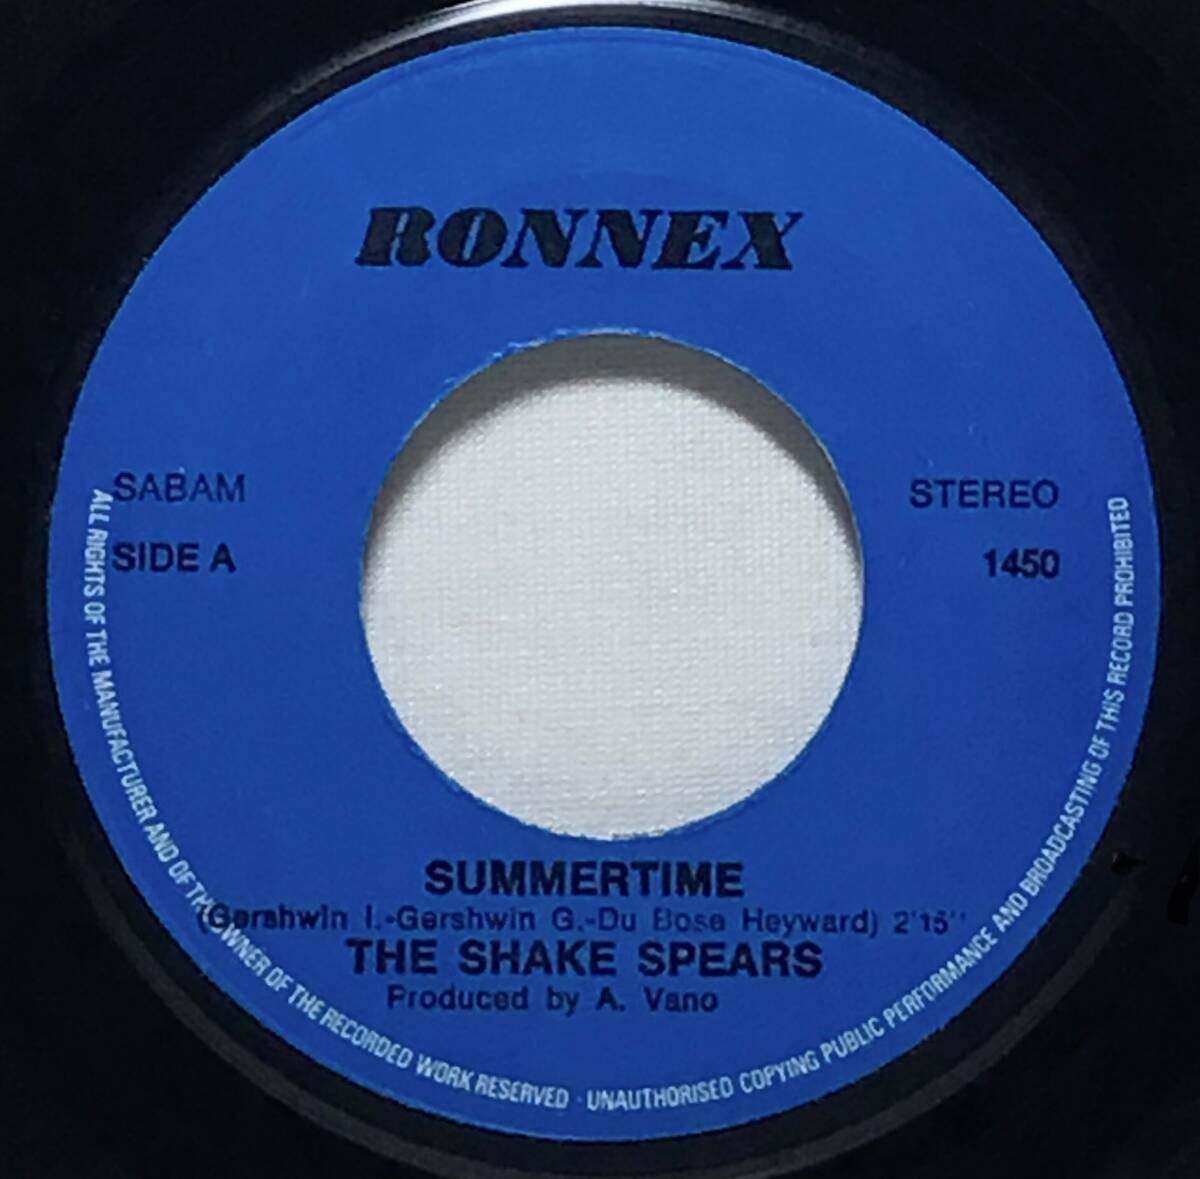 【べ7】 THE SHAKE SPEARS / SUMMERTIME ( JAZZ 名曲カバー ) / GIVE IT TO ME / 1978 ベルギー盤 7インチシングルレコード EP 45 試聴済の画像4